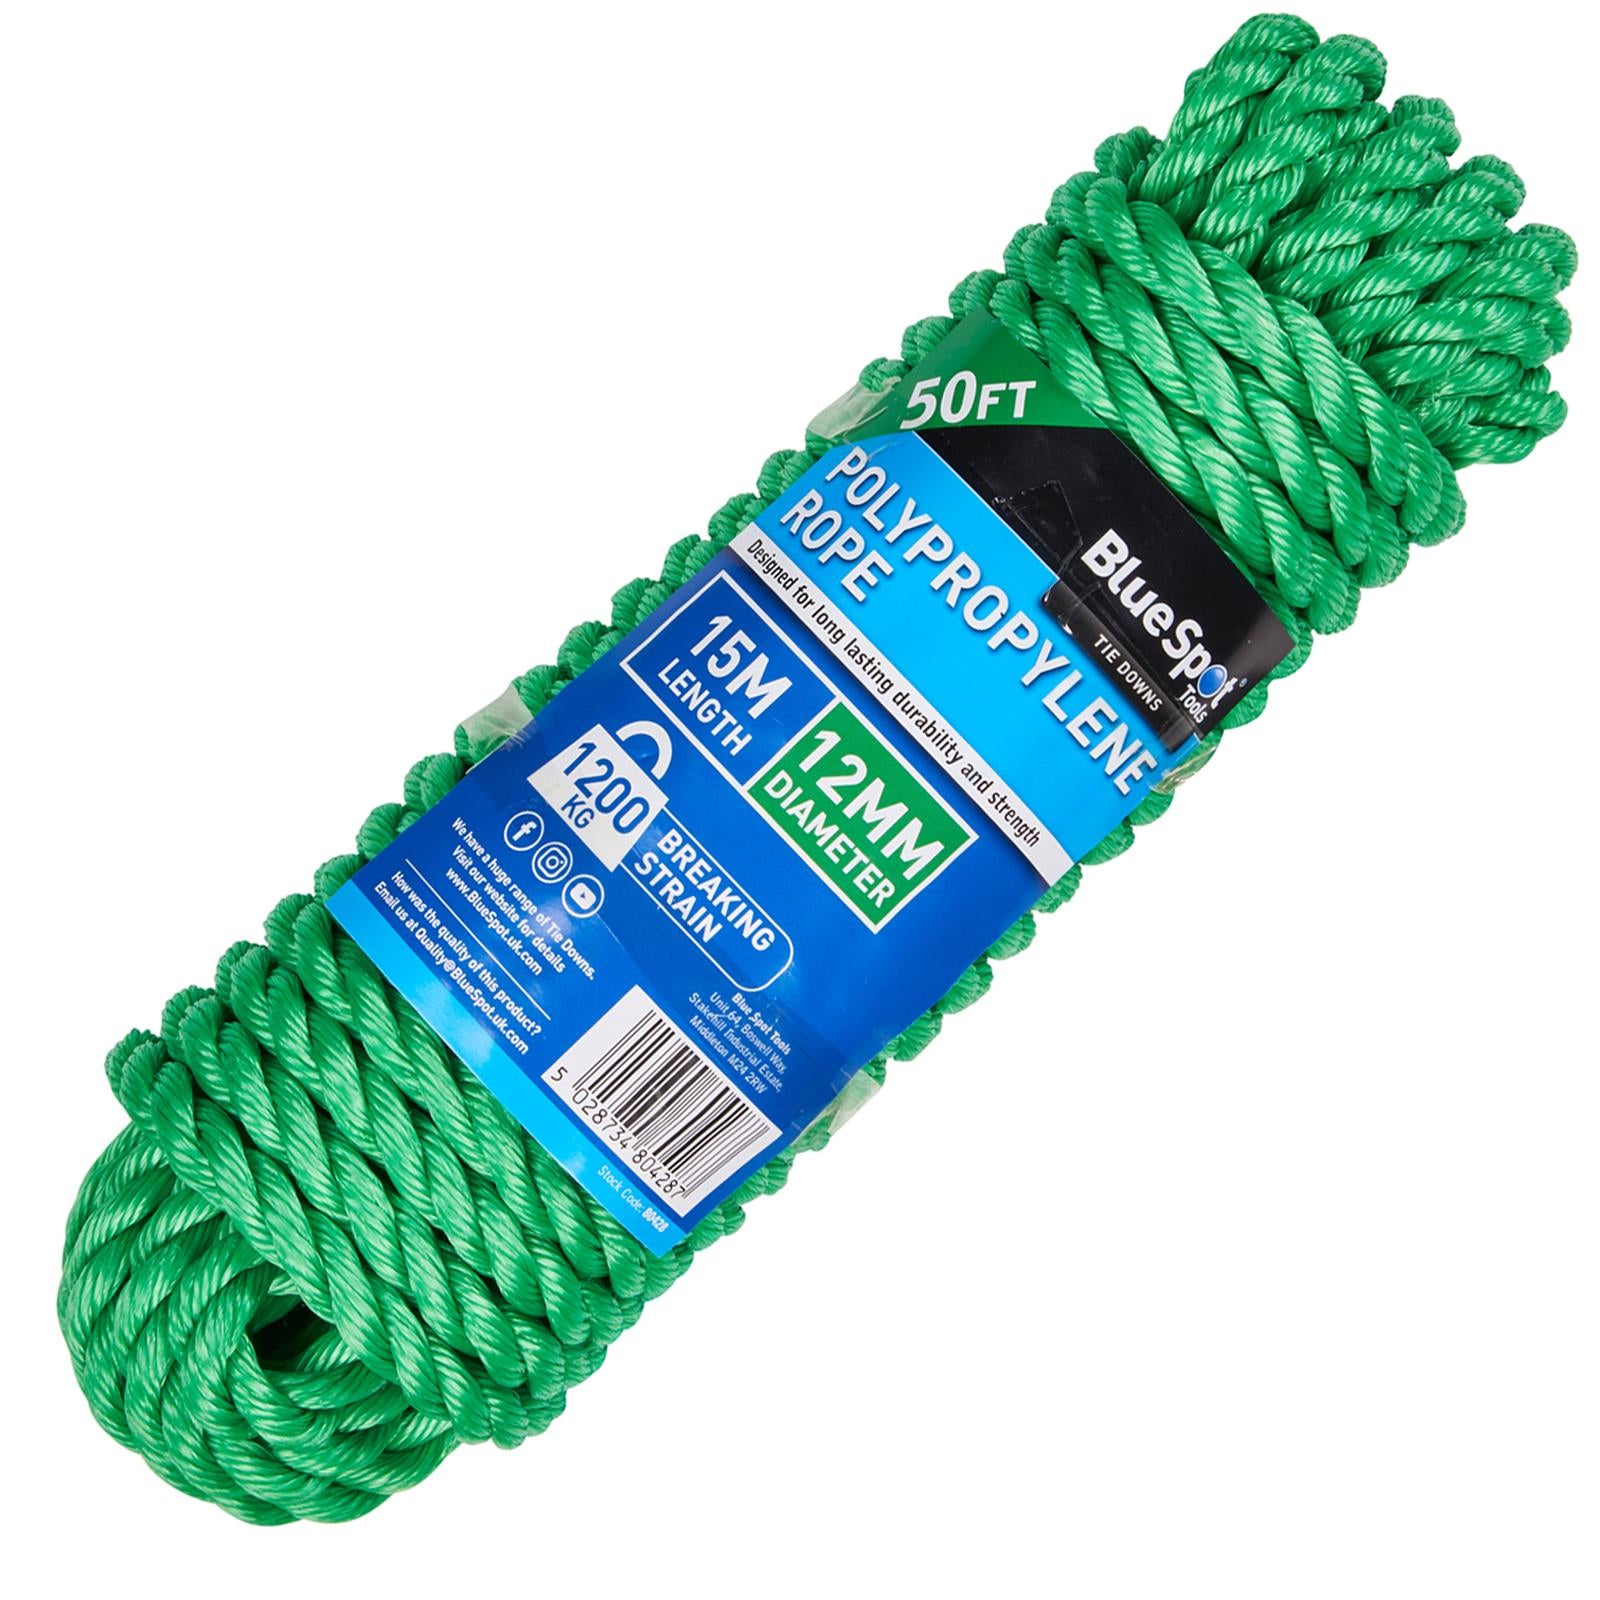 BlueSpot Polypropylene Rope Green 15m x 12mm 50ft